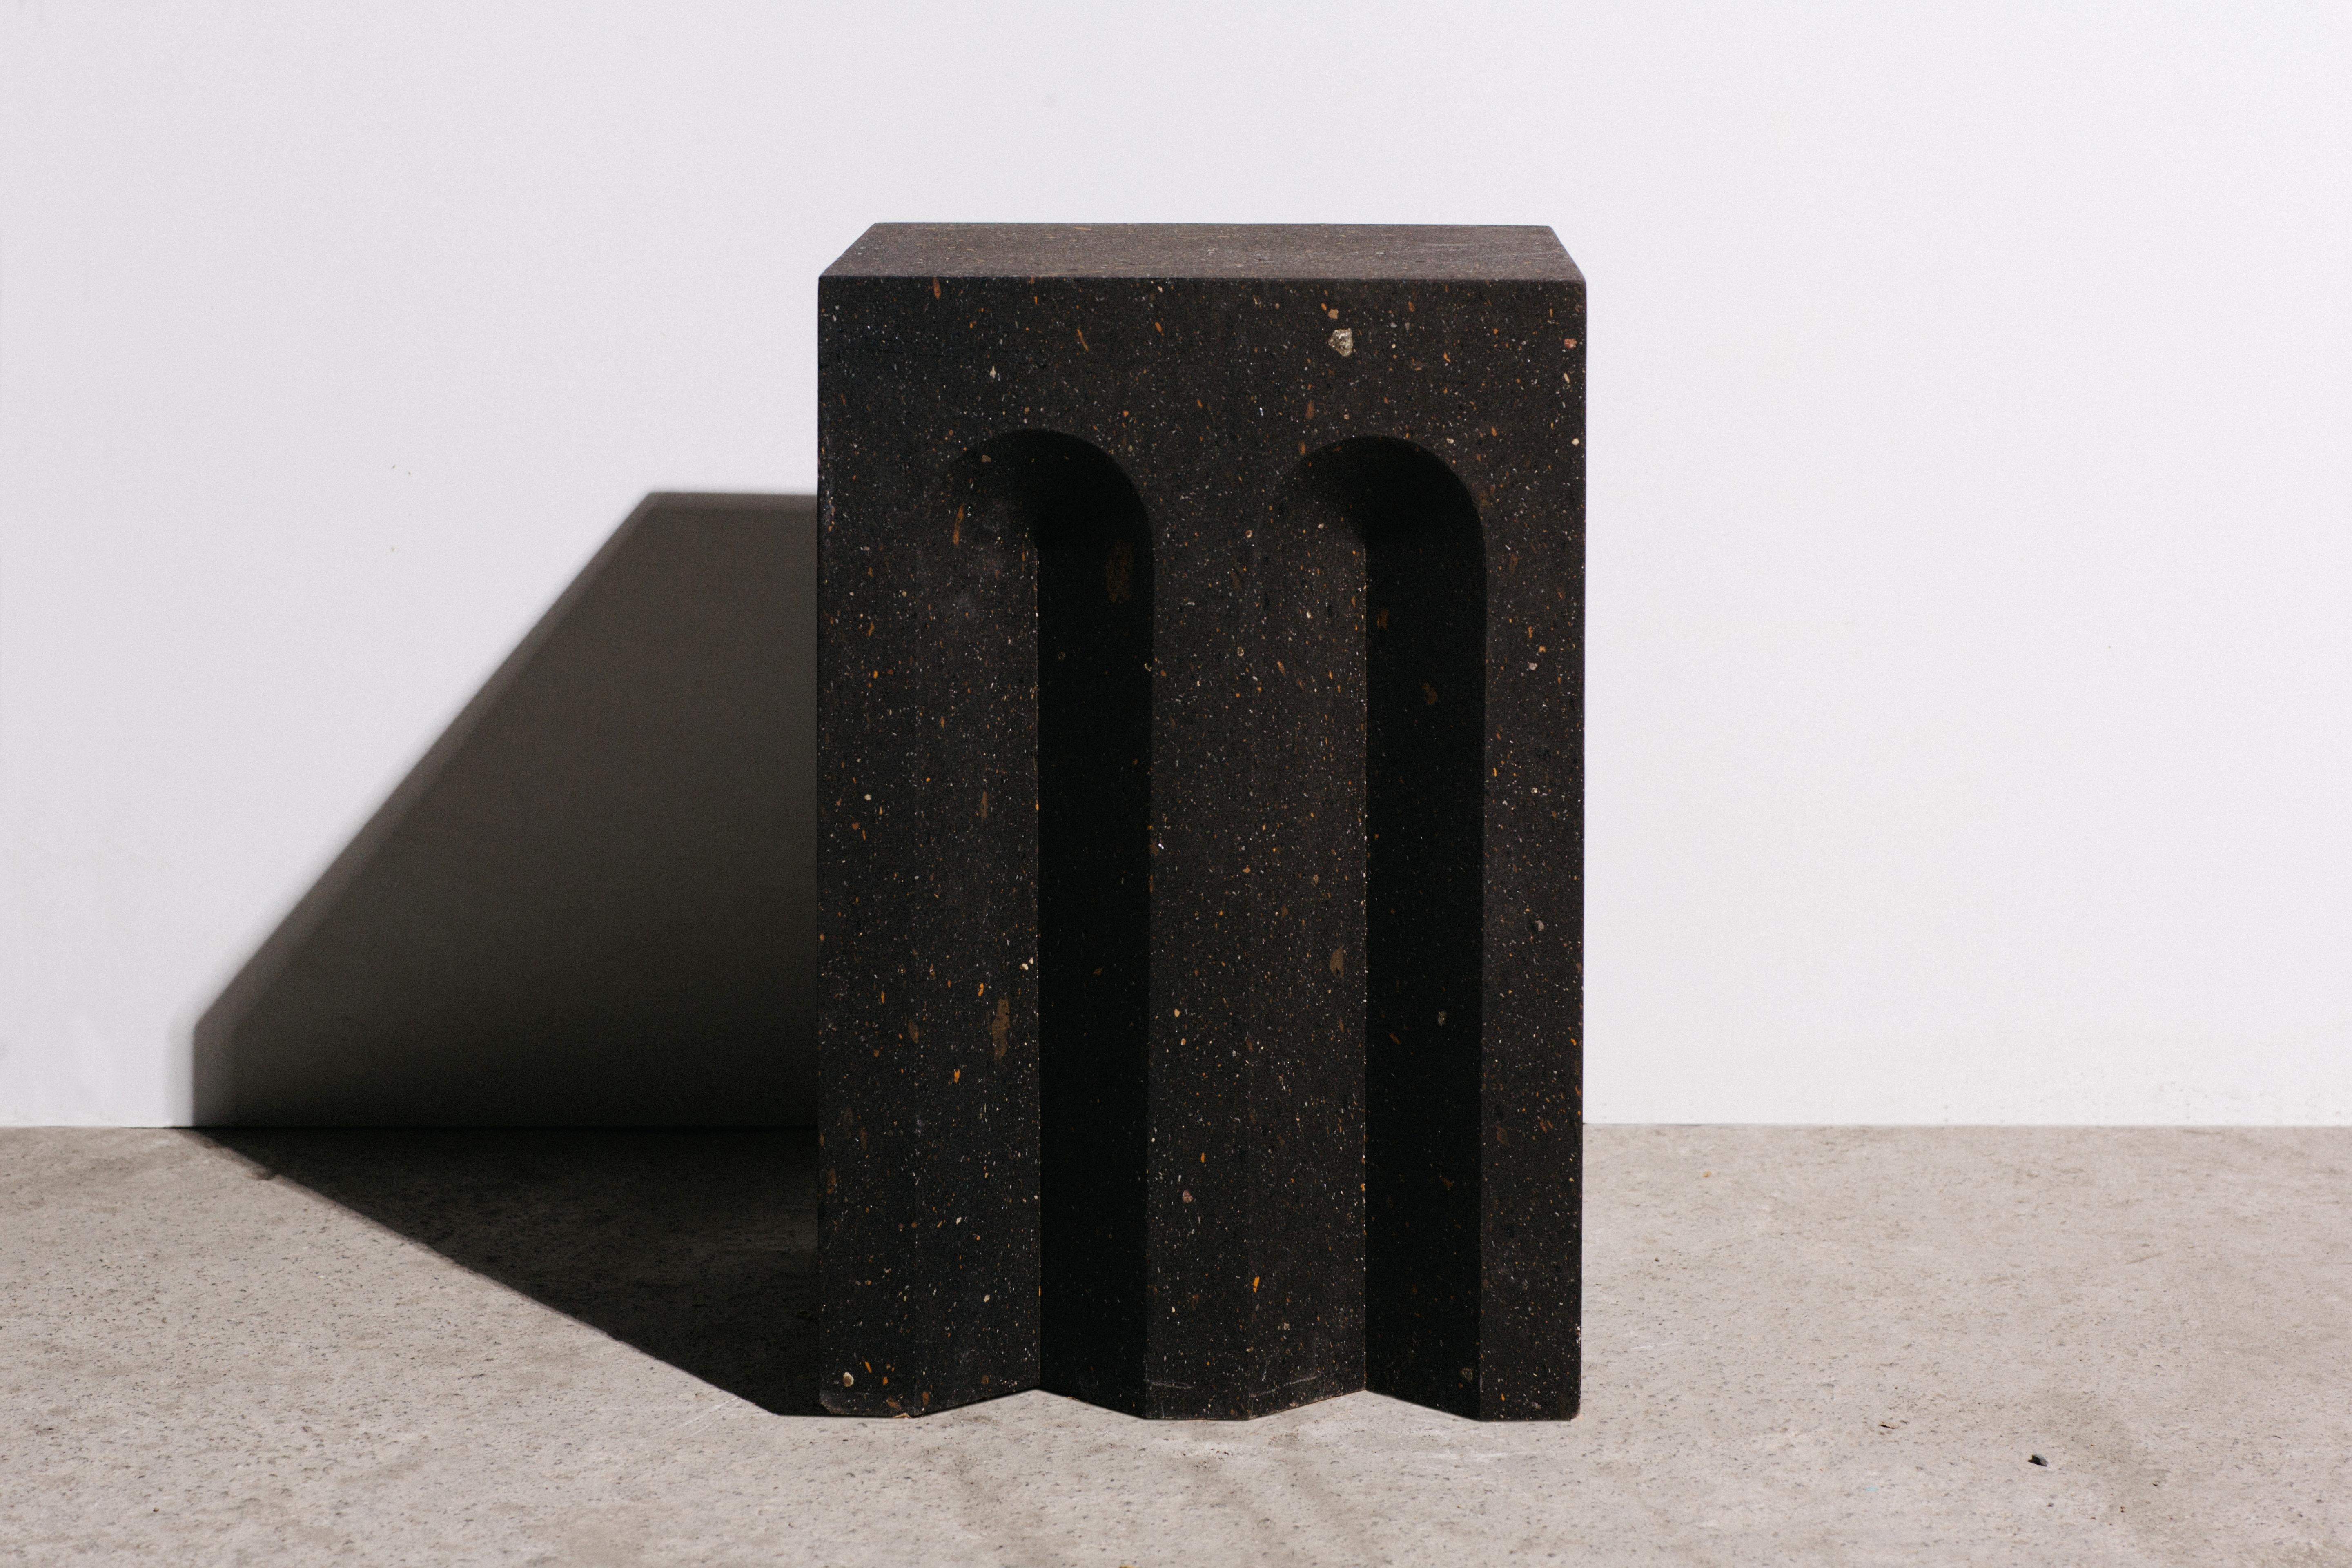 La table d'appoint source No.5 par A Space
Dimensions : D&H 30 x L 30 x H 45cm
MATERIAL : Tuf noir.
Poids : 45 kg

Inspirée par l'antiquité, les matériaux, l'artisanat et l'architecture de l'Arménie, cette collection se compose de 12 objets en